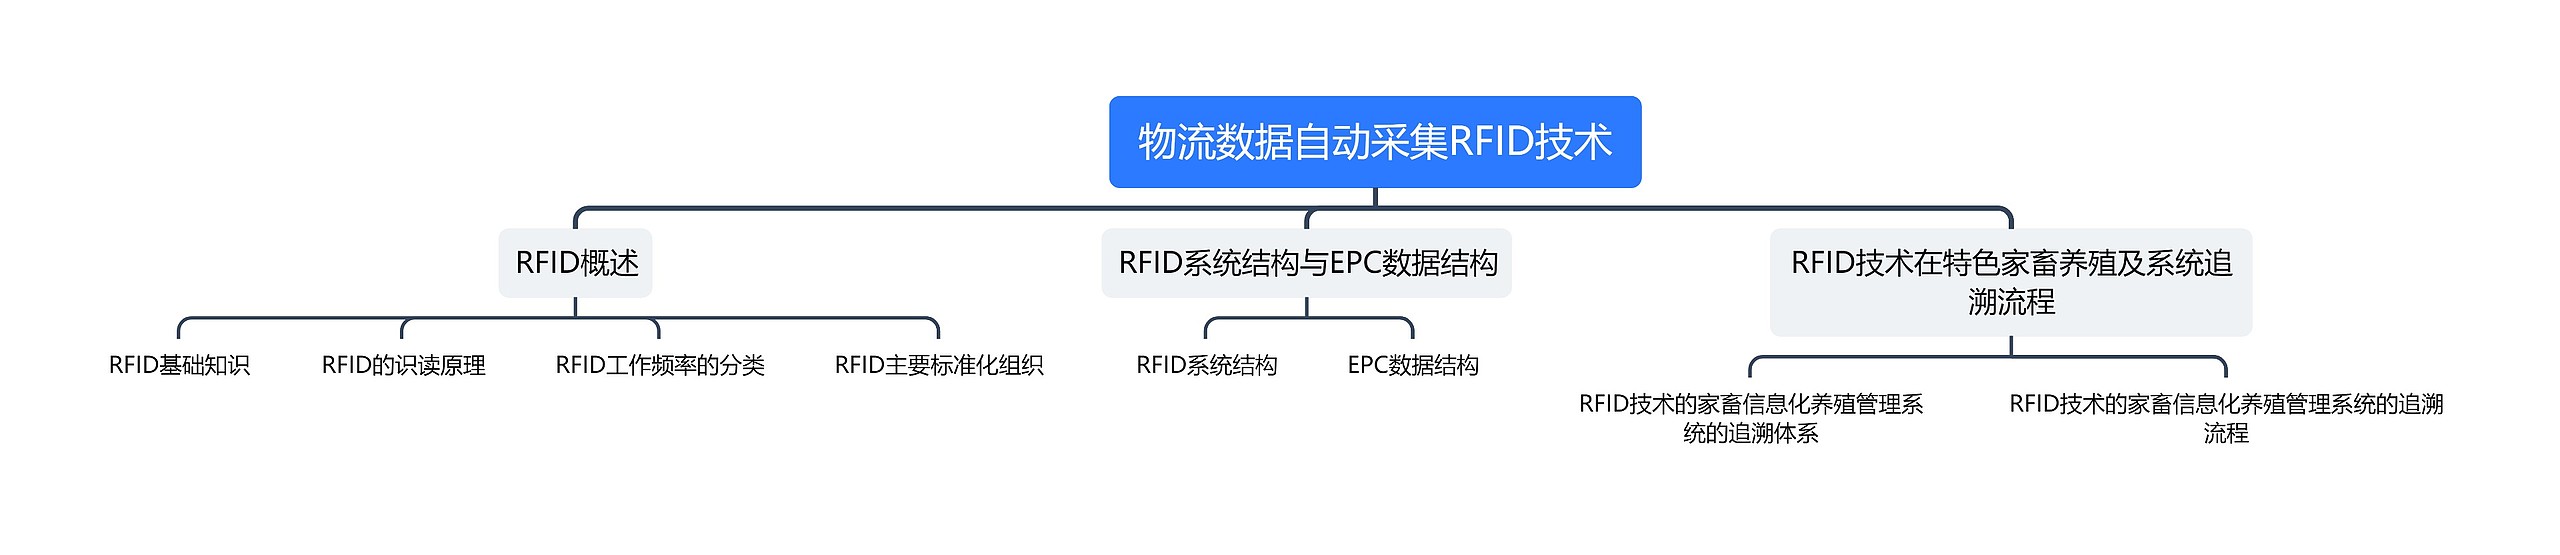 物流数据自动采集RFID技术